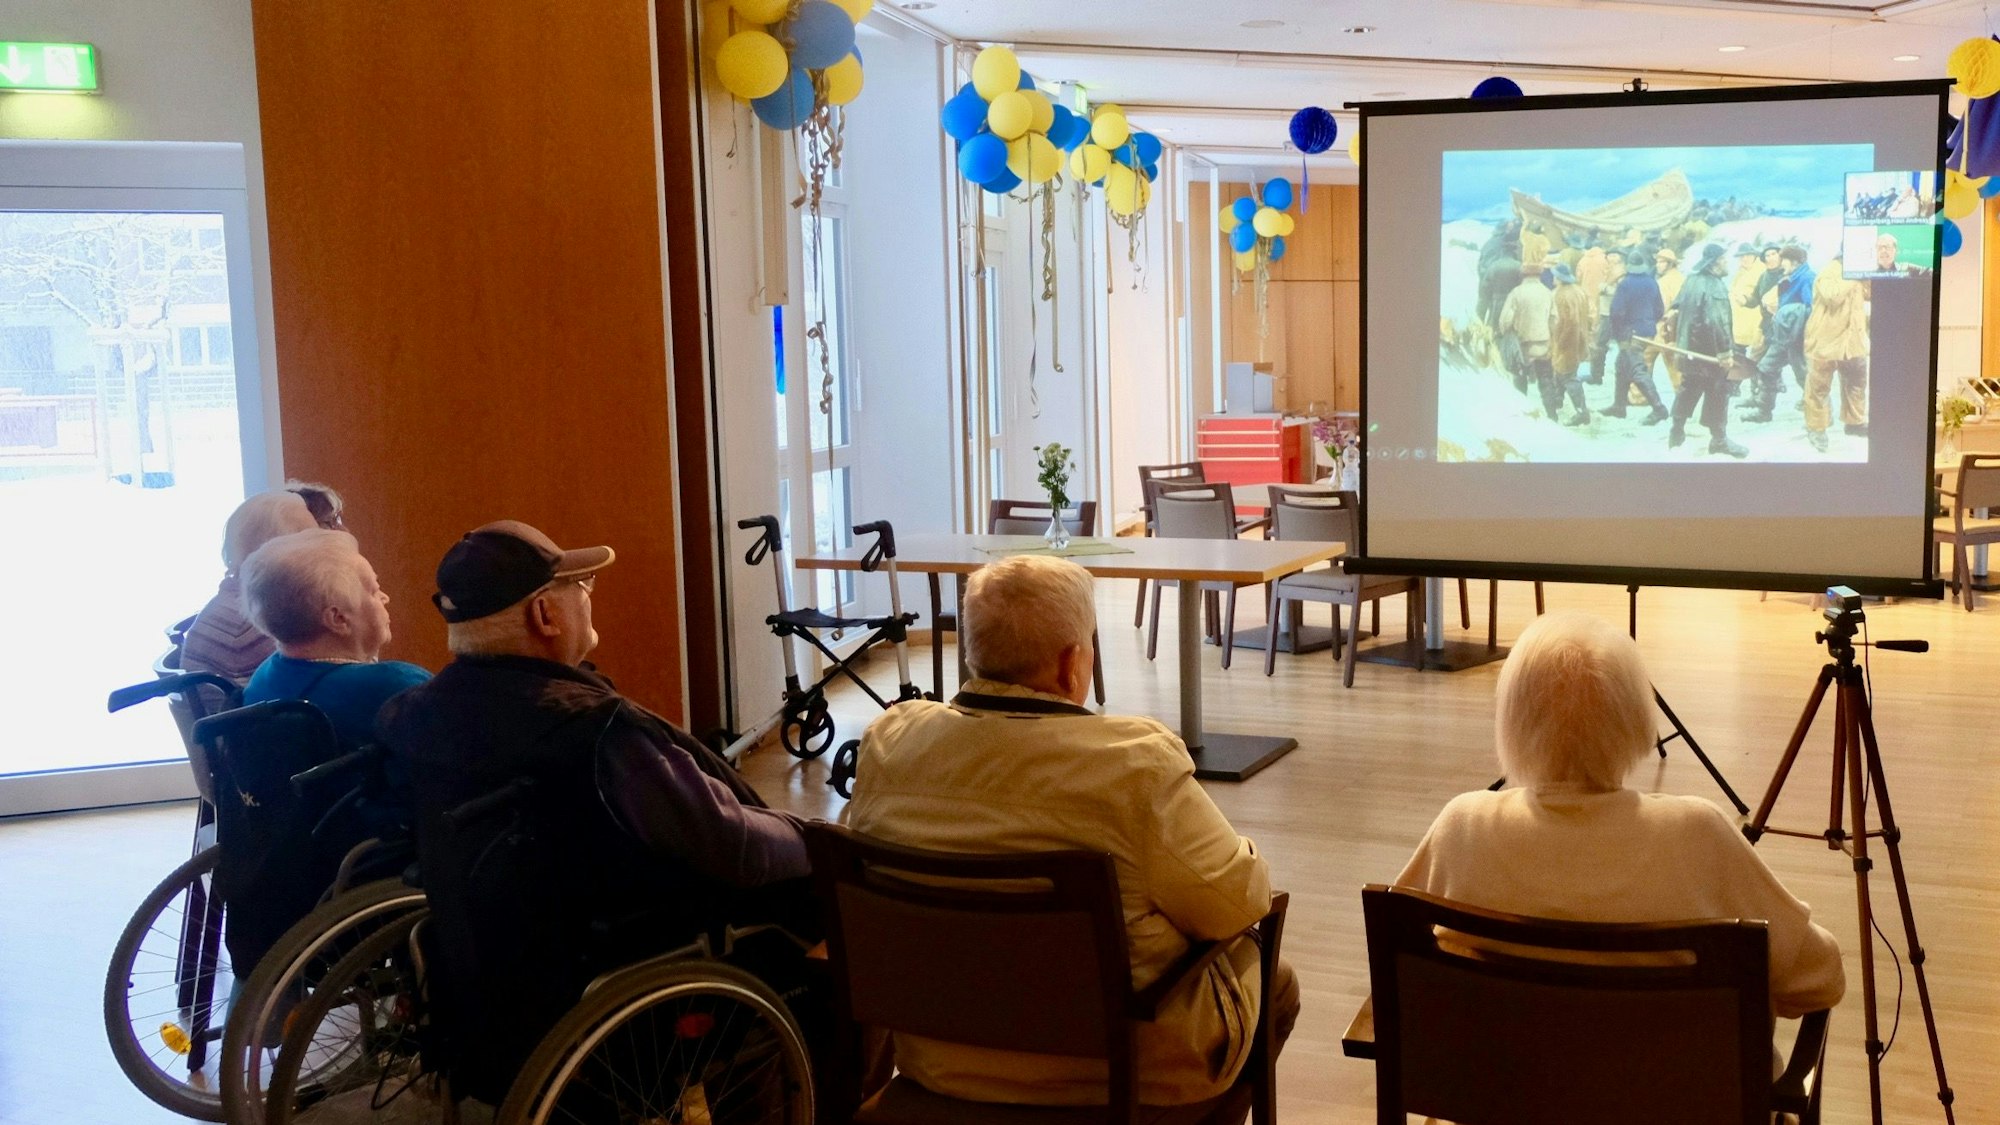 Einige ältere Menschen sitzen im Halbkreis in einem großen Saal. Sie betrachten ein Bild, das auf eine Leinwand projiziert wird.